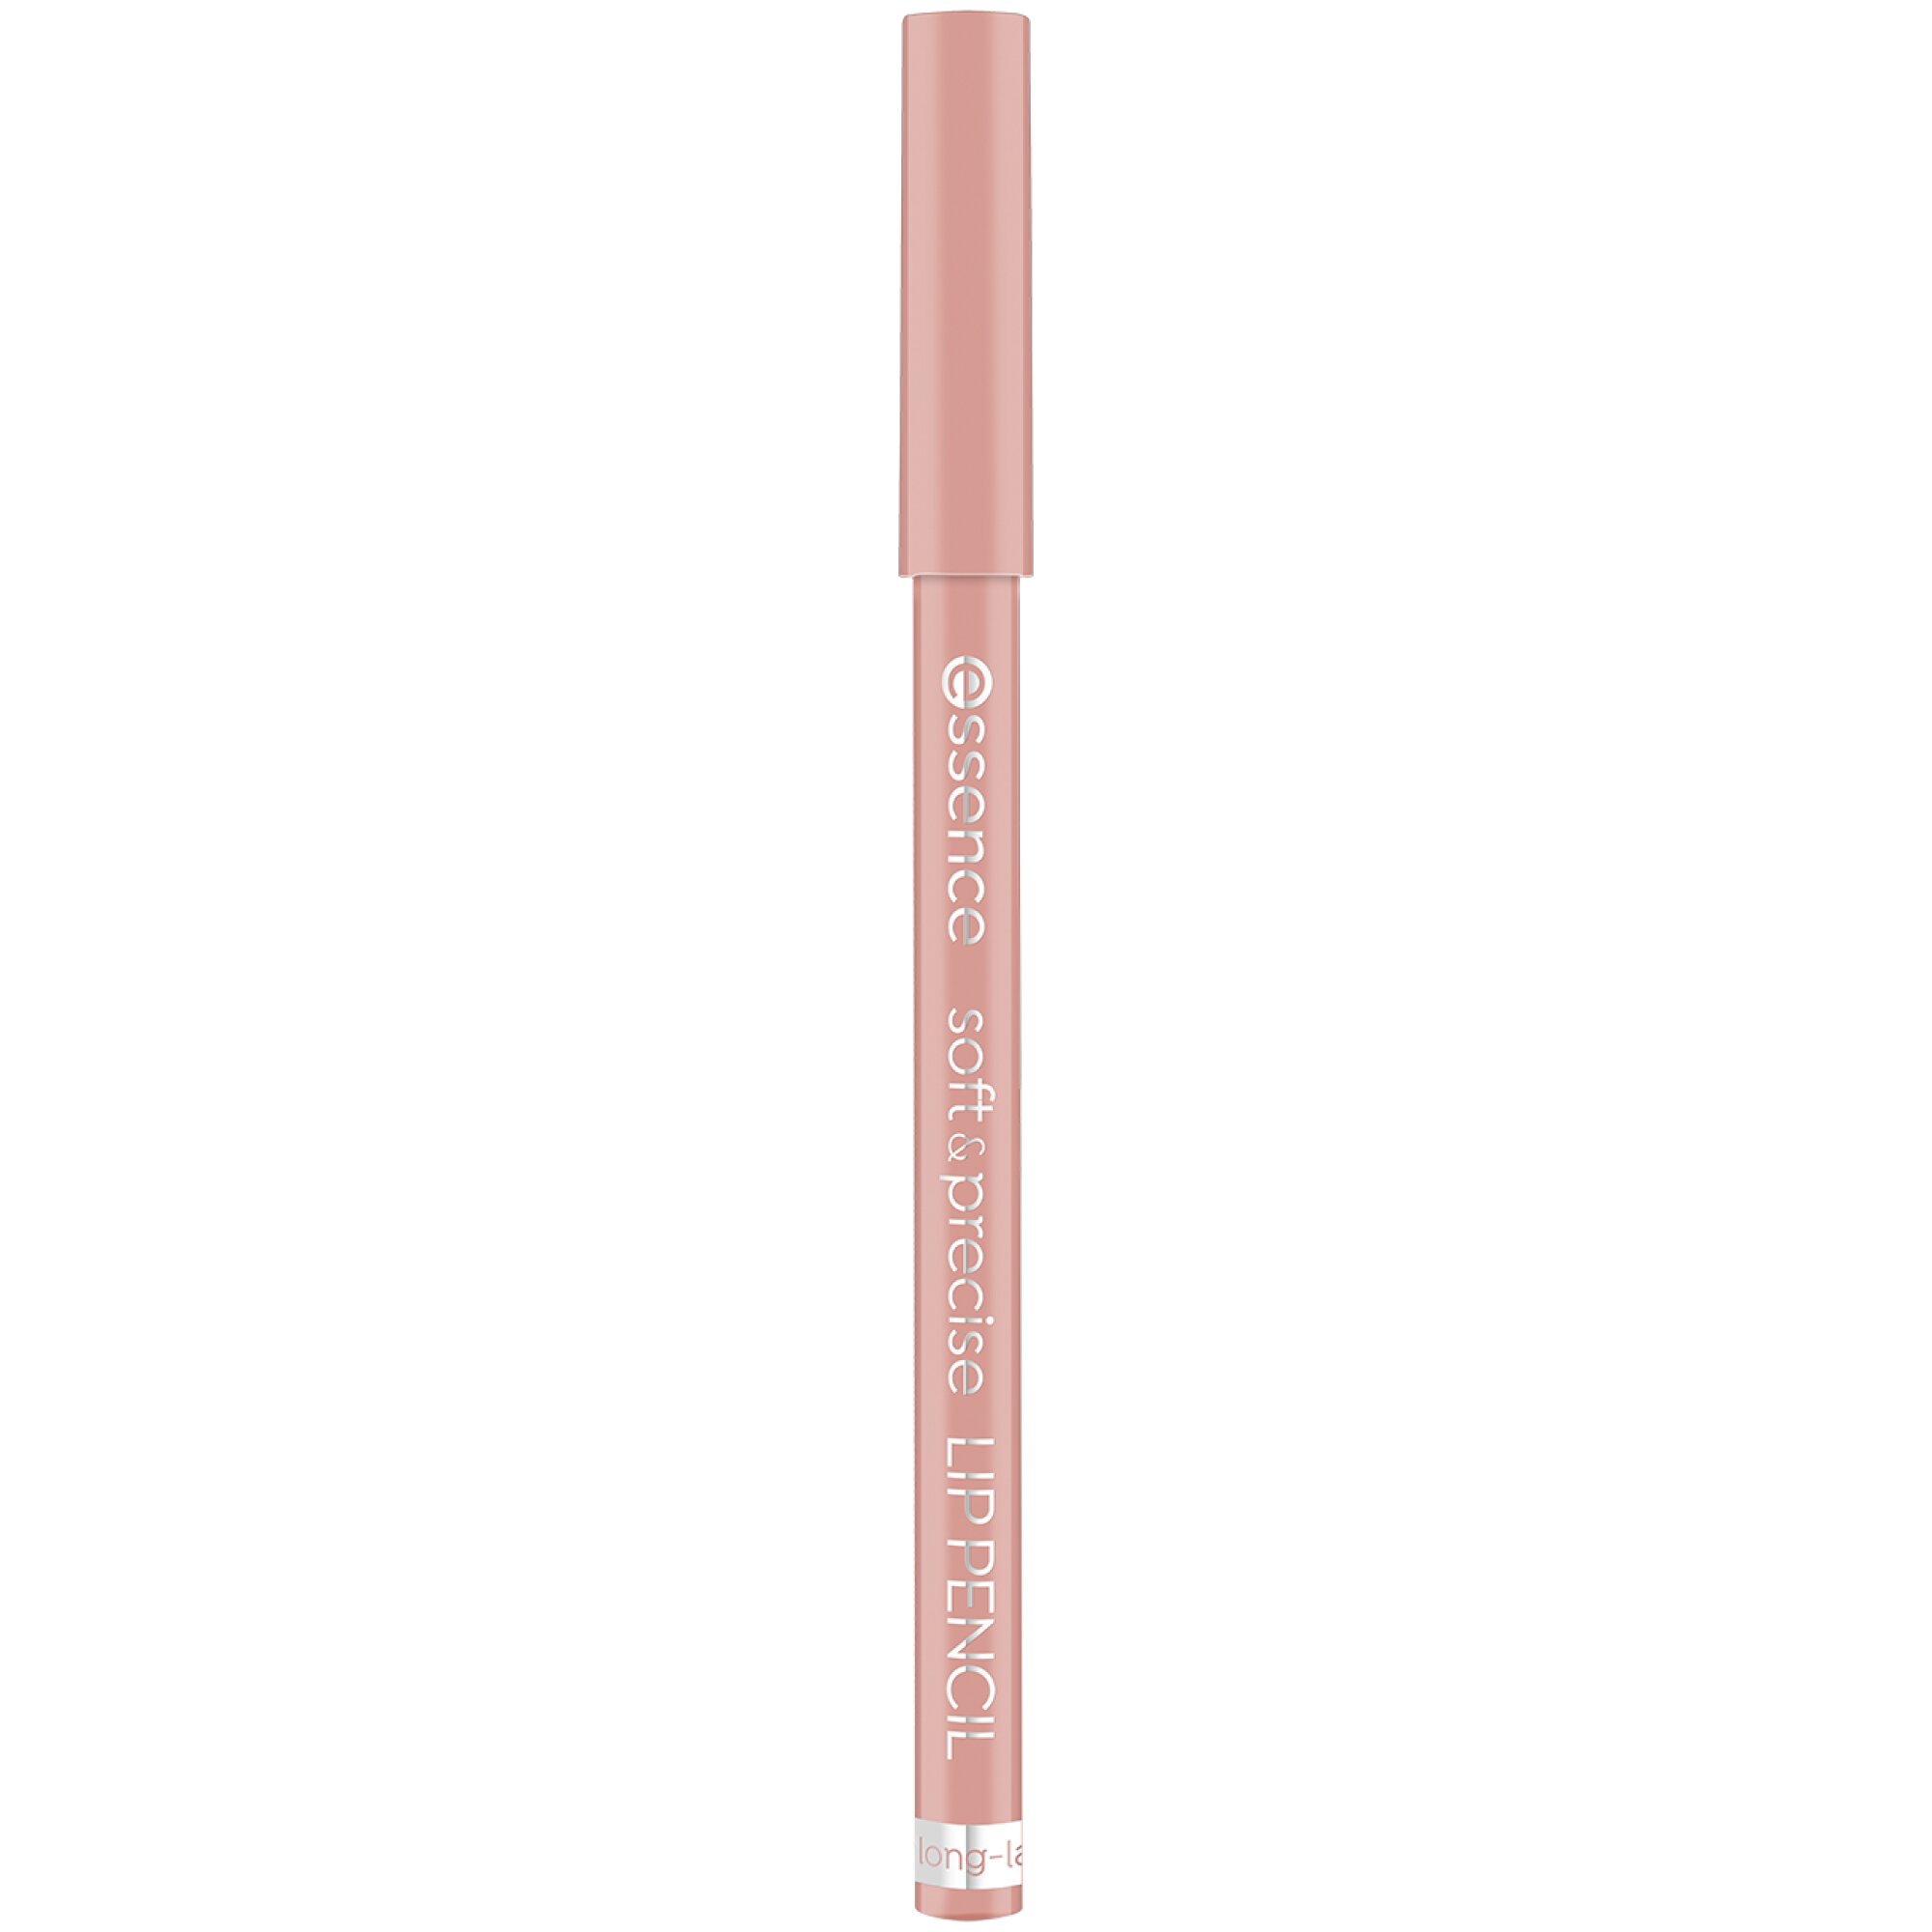 Creion pentru buze Soft & Precise, 301 - Romantic, 0.78 g, Essence